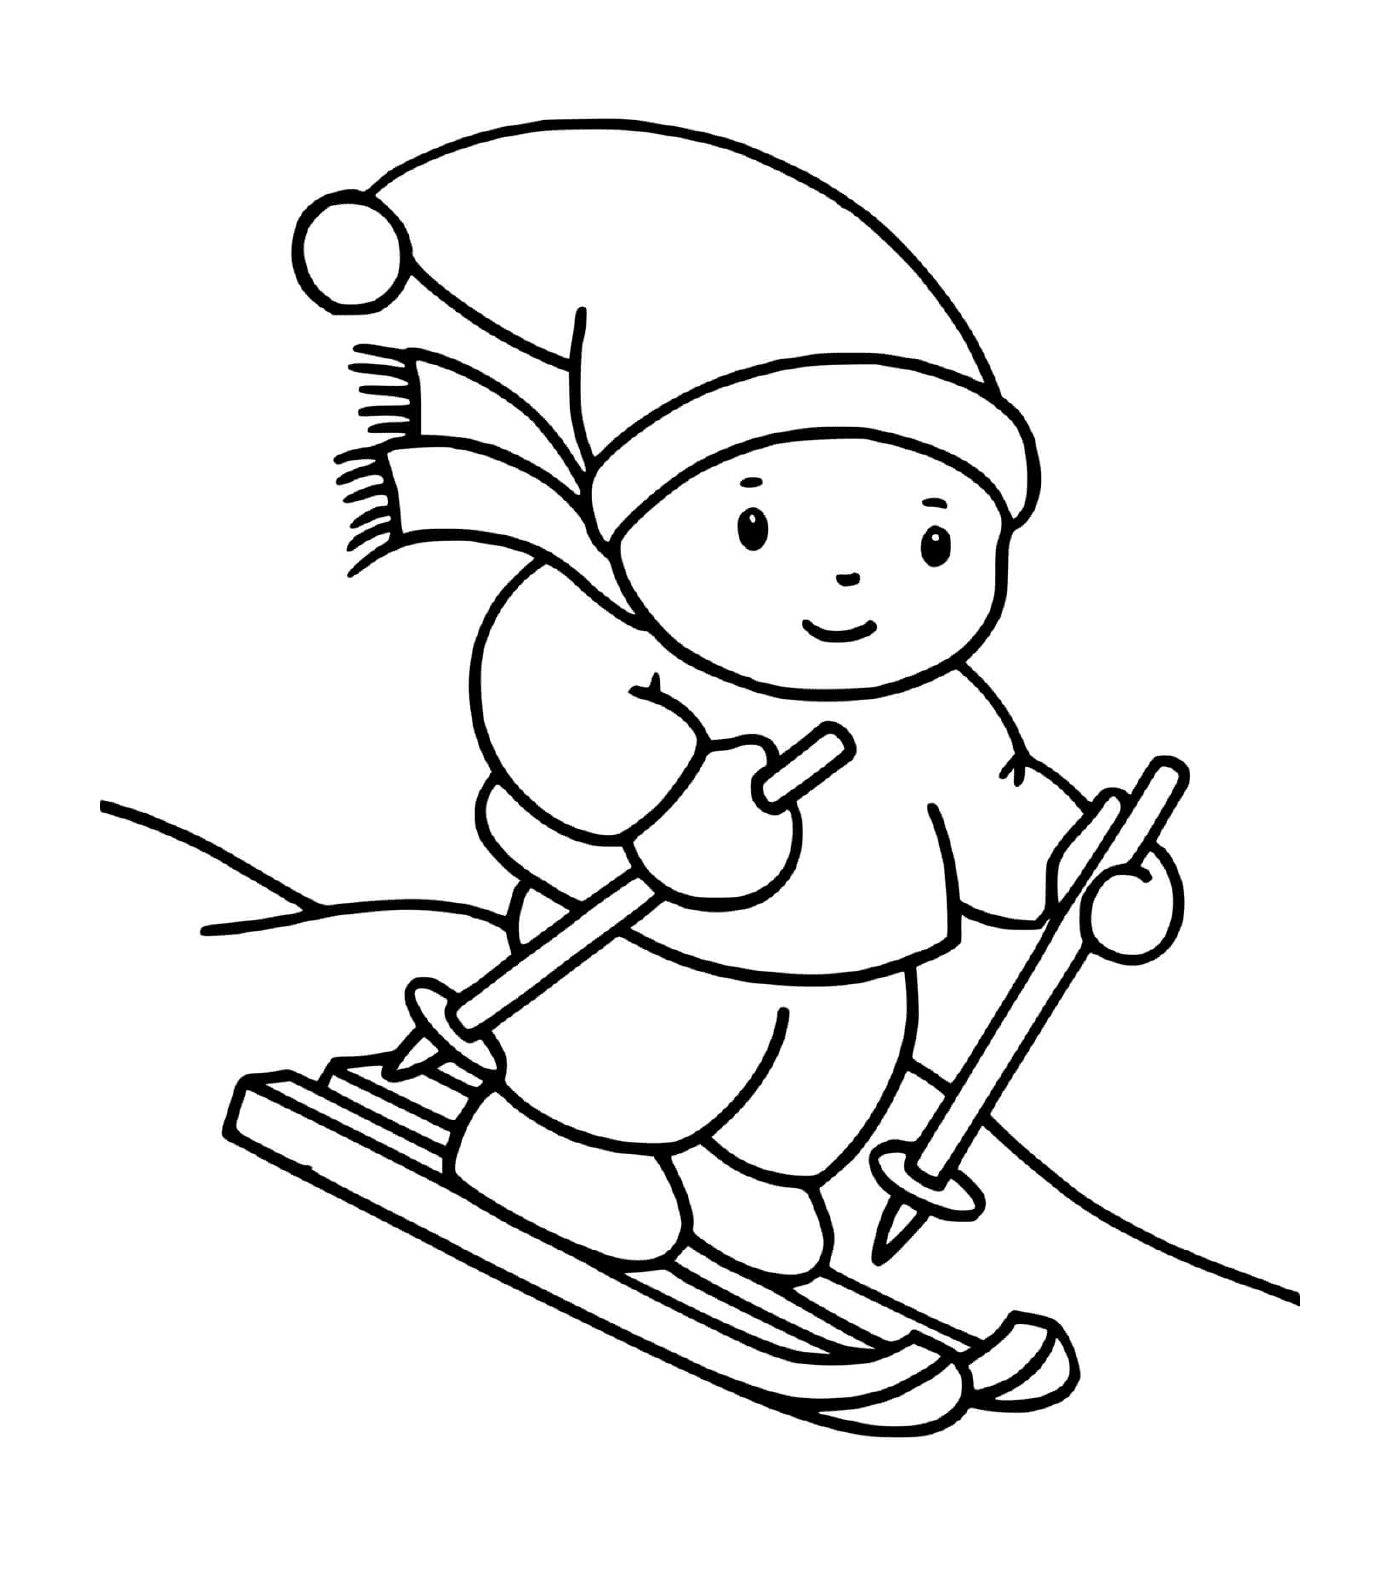   Enfant pratiquant le ski 